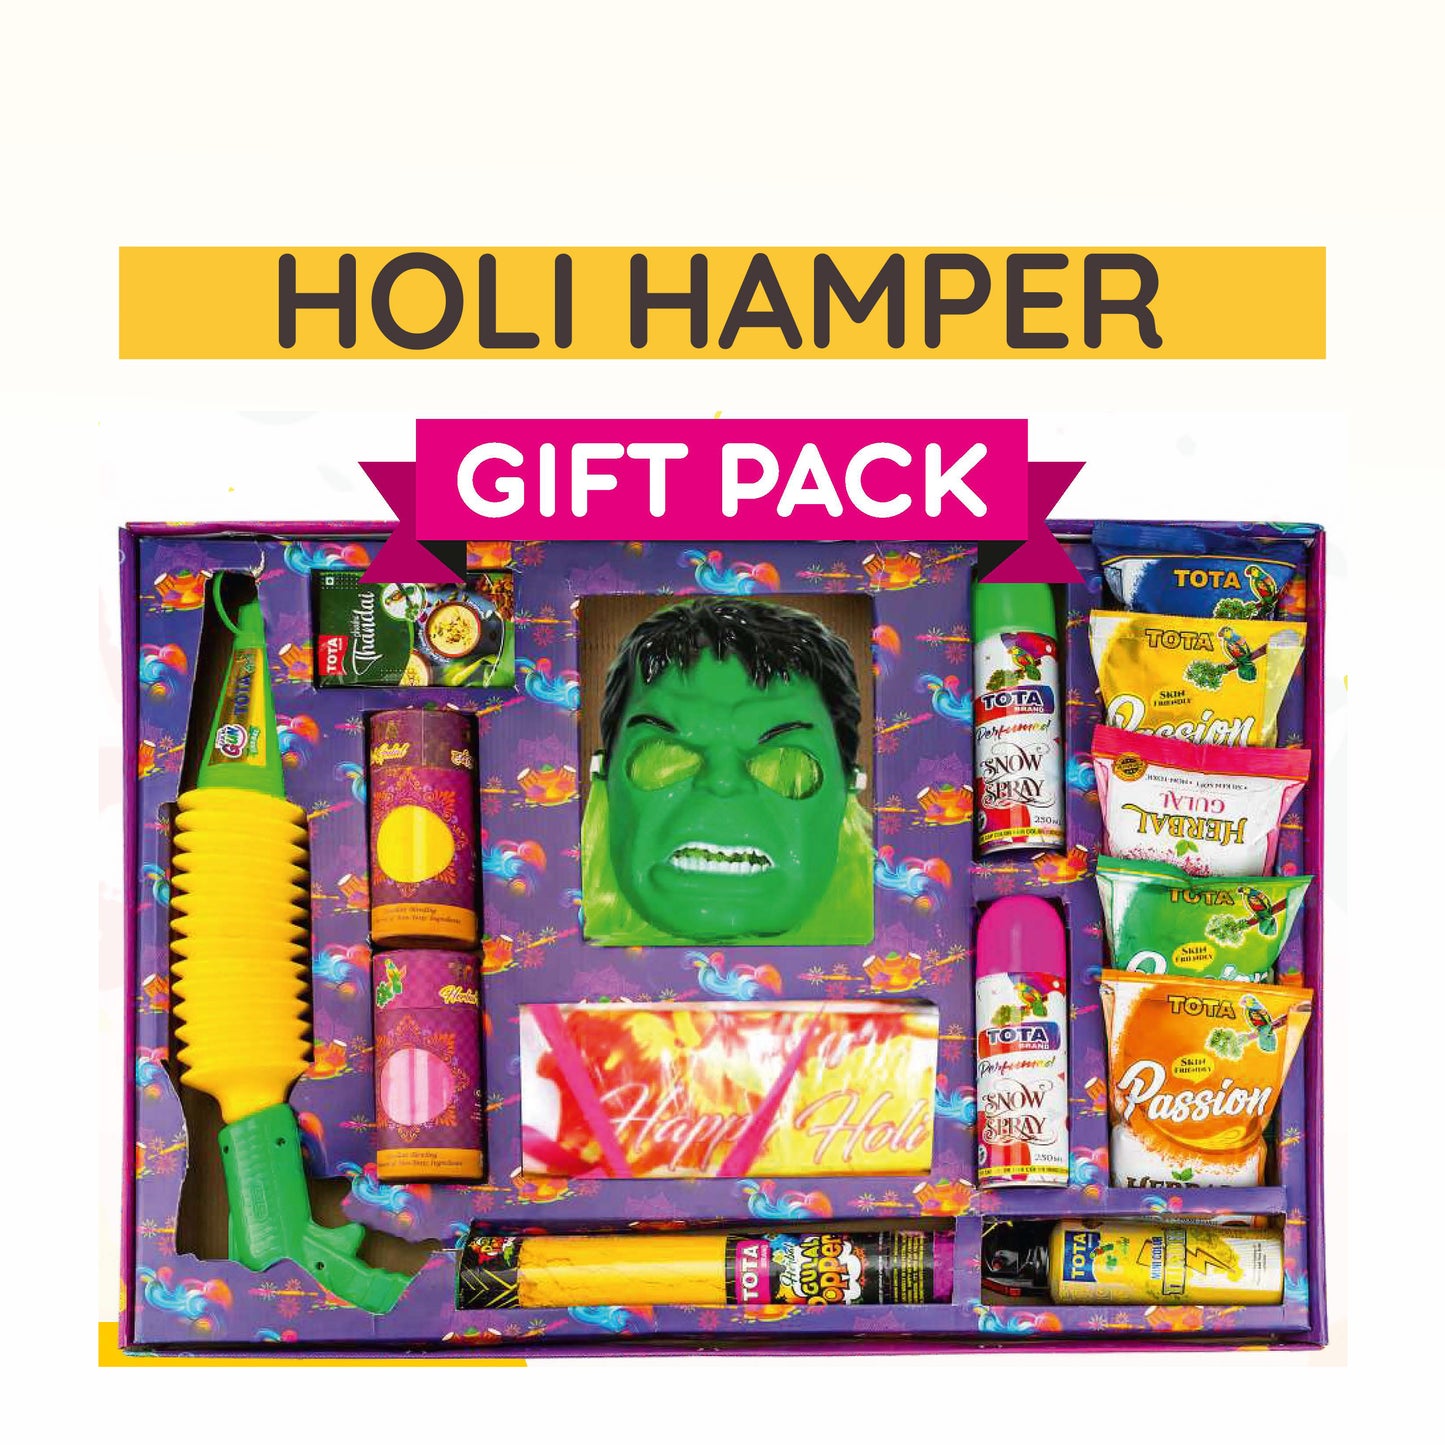 Holi Hamper Gift Pack